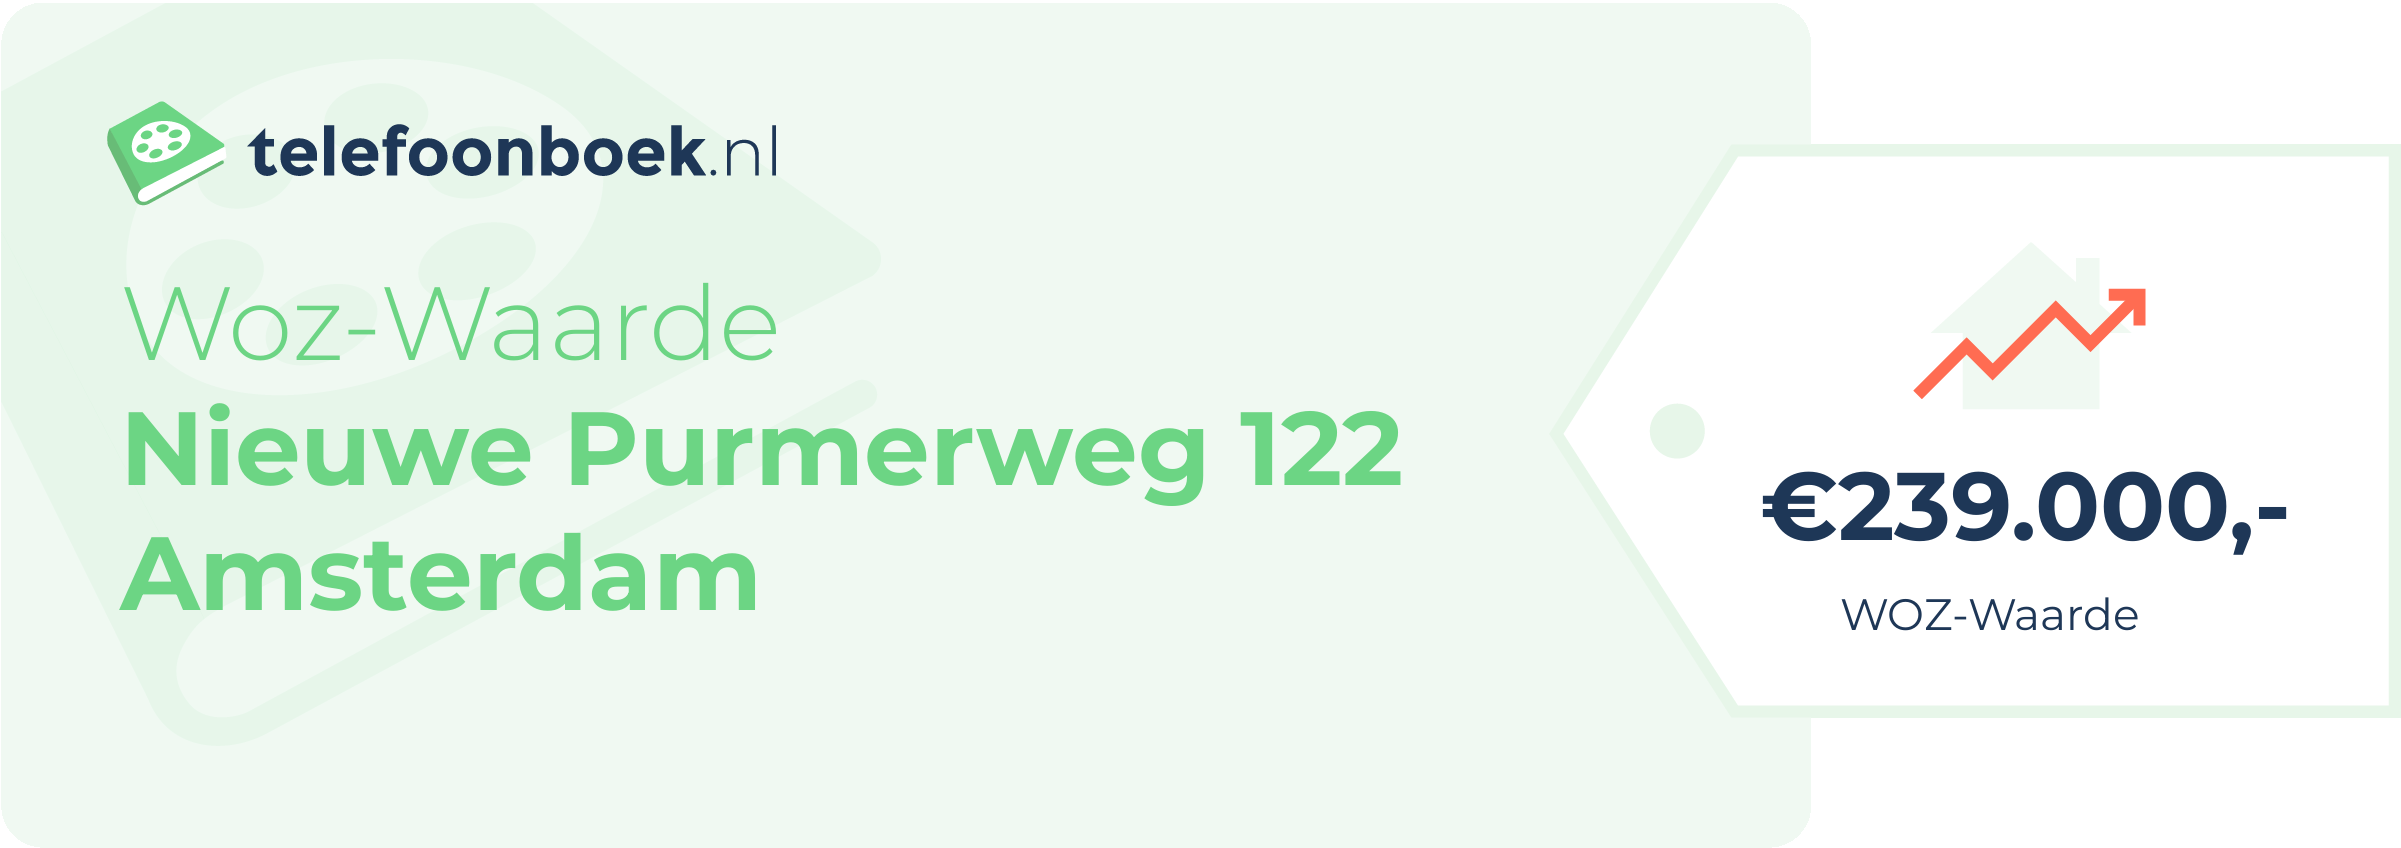 WOZ-waarde Nieuwe Purmerweg 122 Amsterdam